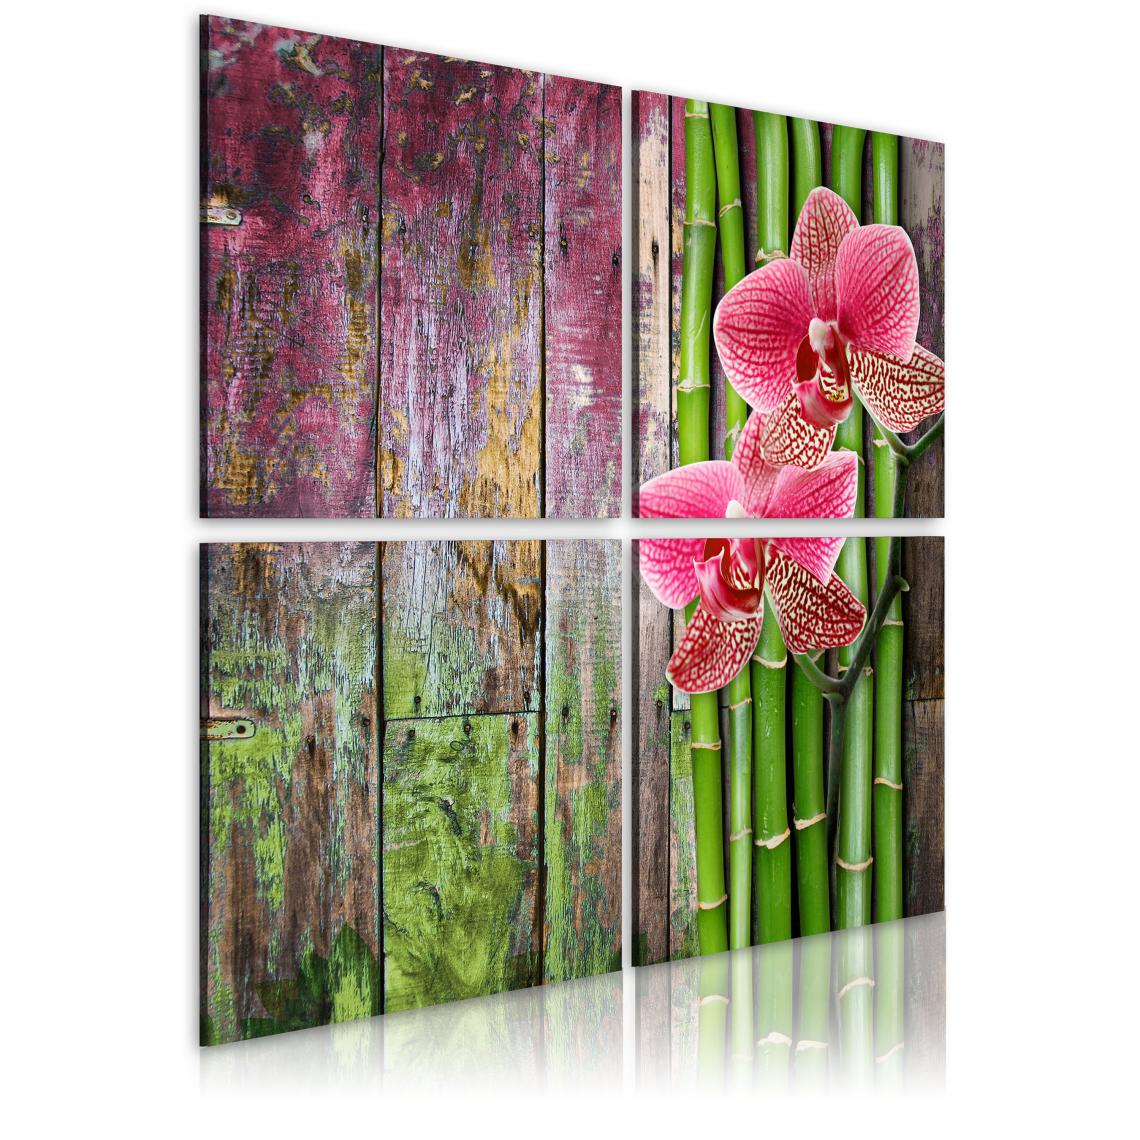 Decoshop26 - Tableau sur toile en 4 panneaux décoration murale image imprimée cadre en bois à suspendre Bambou et orchidée 80x80 cm 11_0008909 - Tableaux, peintures